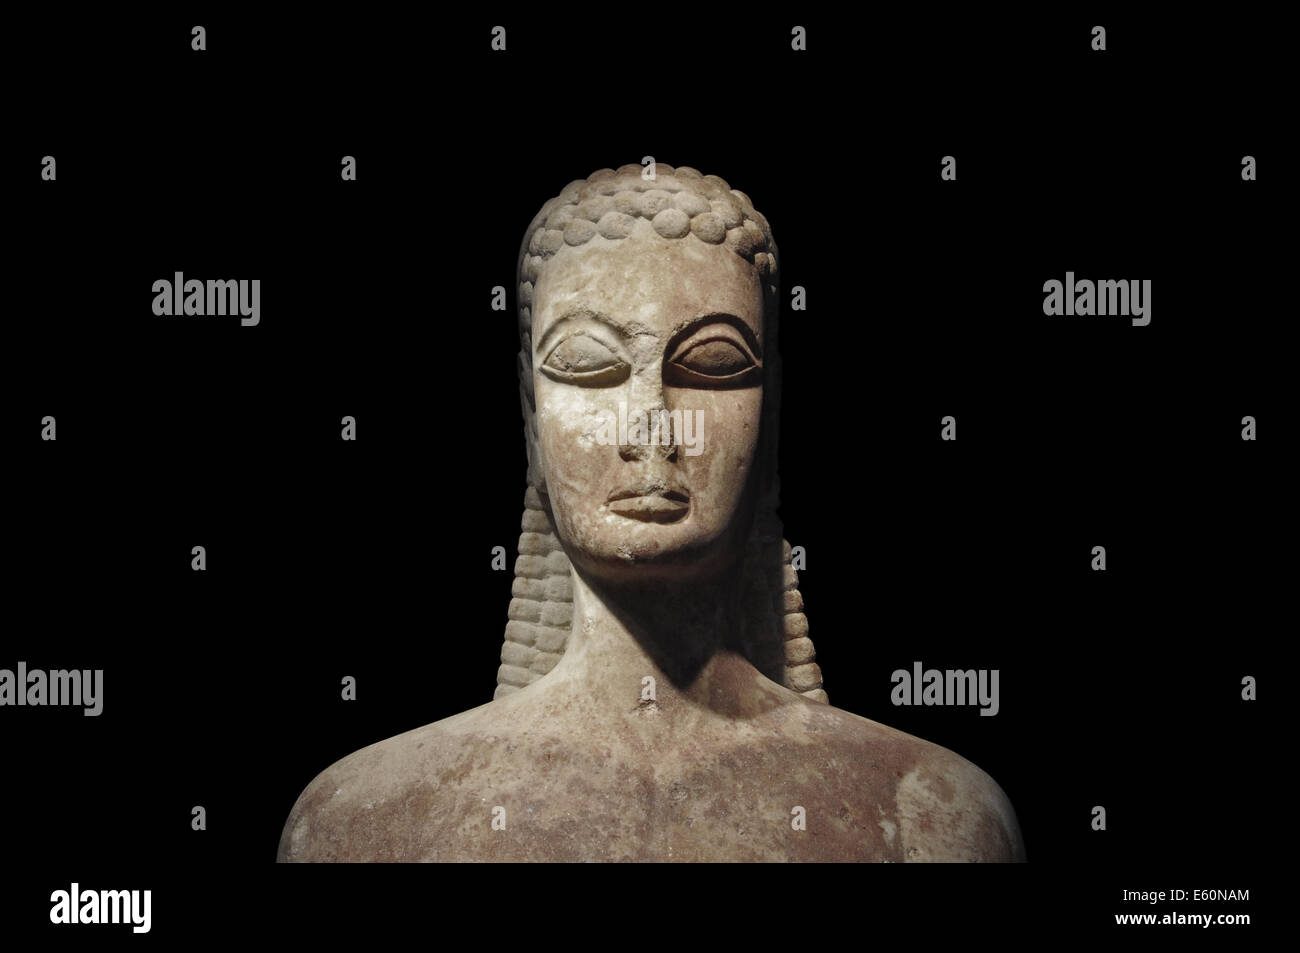 Kouros de l'ancienne porte sacrée statue de jeune homme sur fond noir. Musée Kerameikos, Athènes Grèce. Banque D'Images